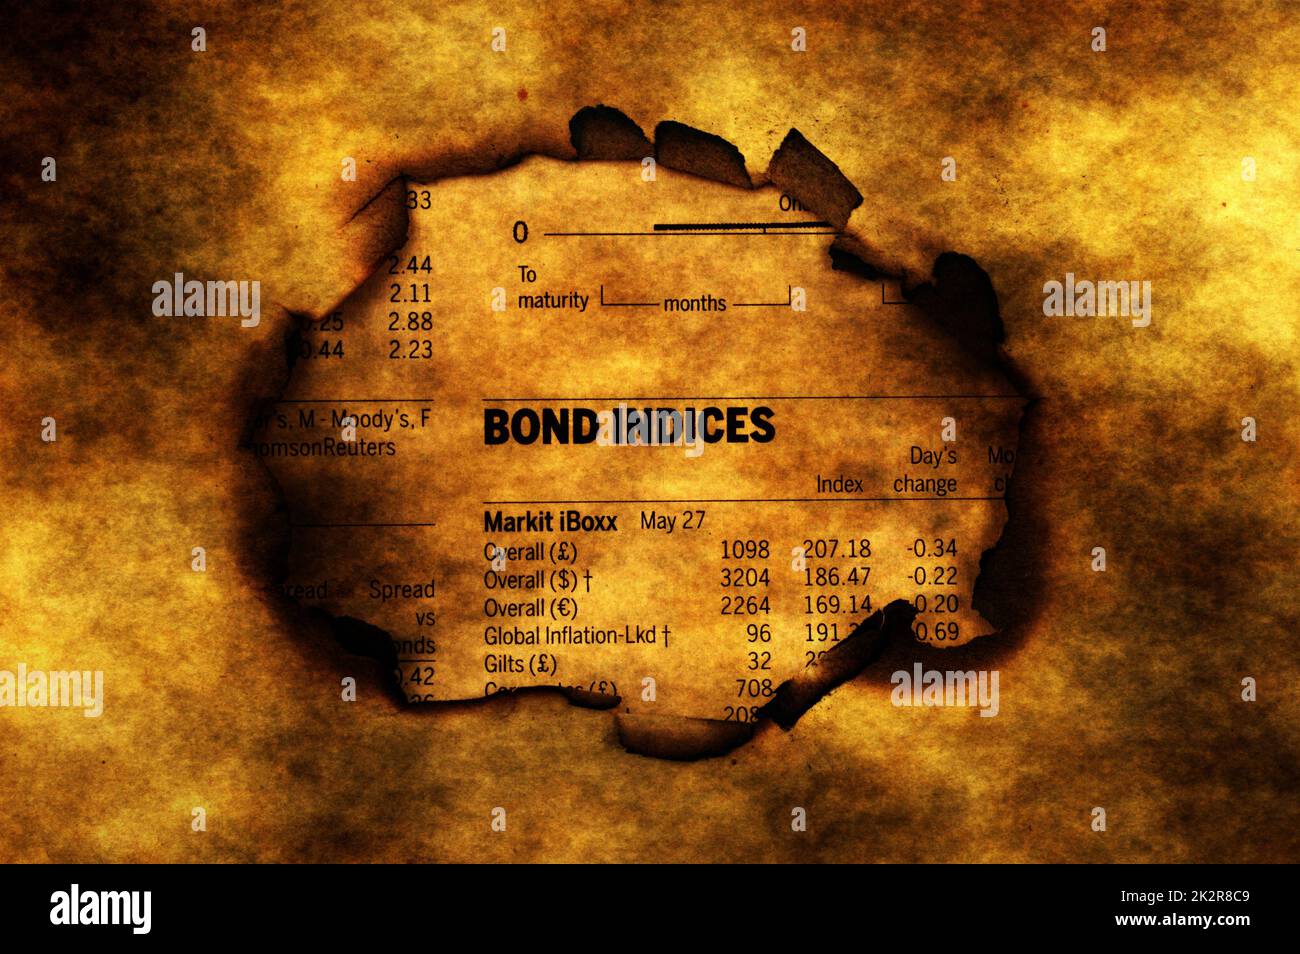 Bond indices on grunge background Stock Photo